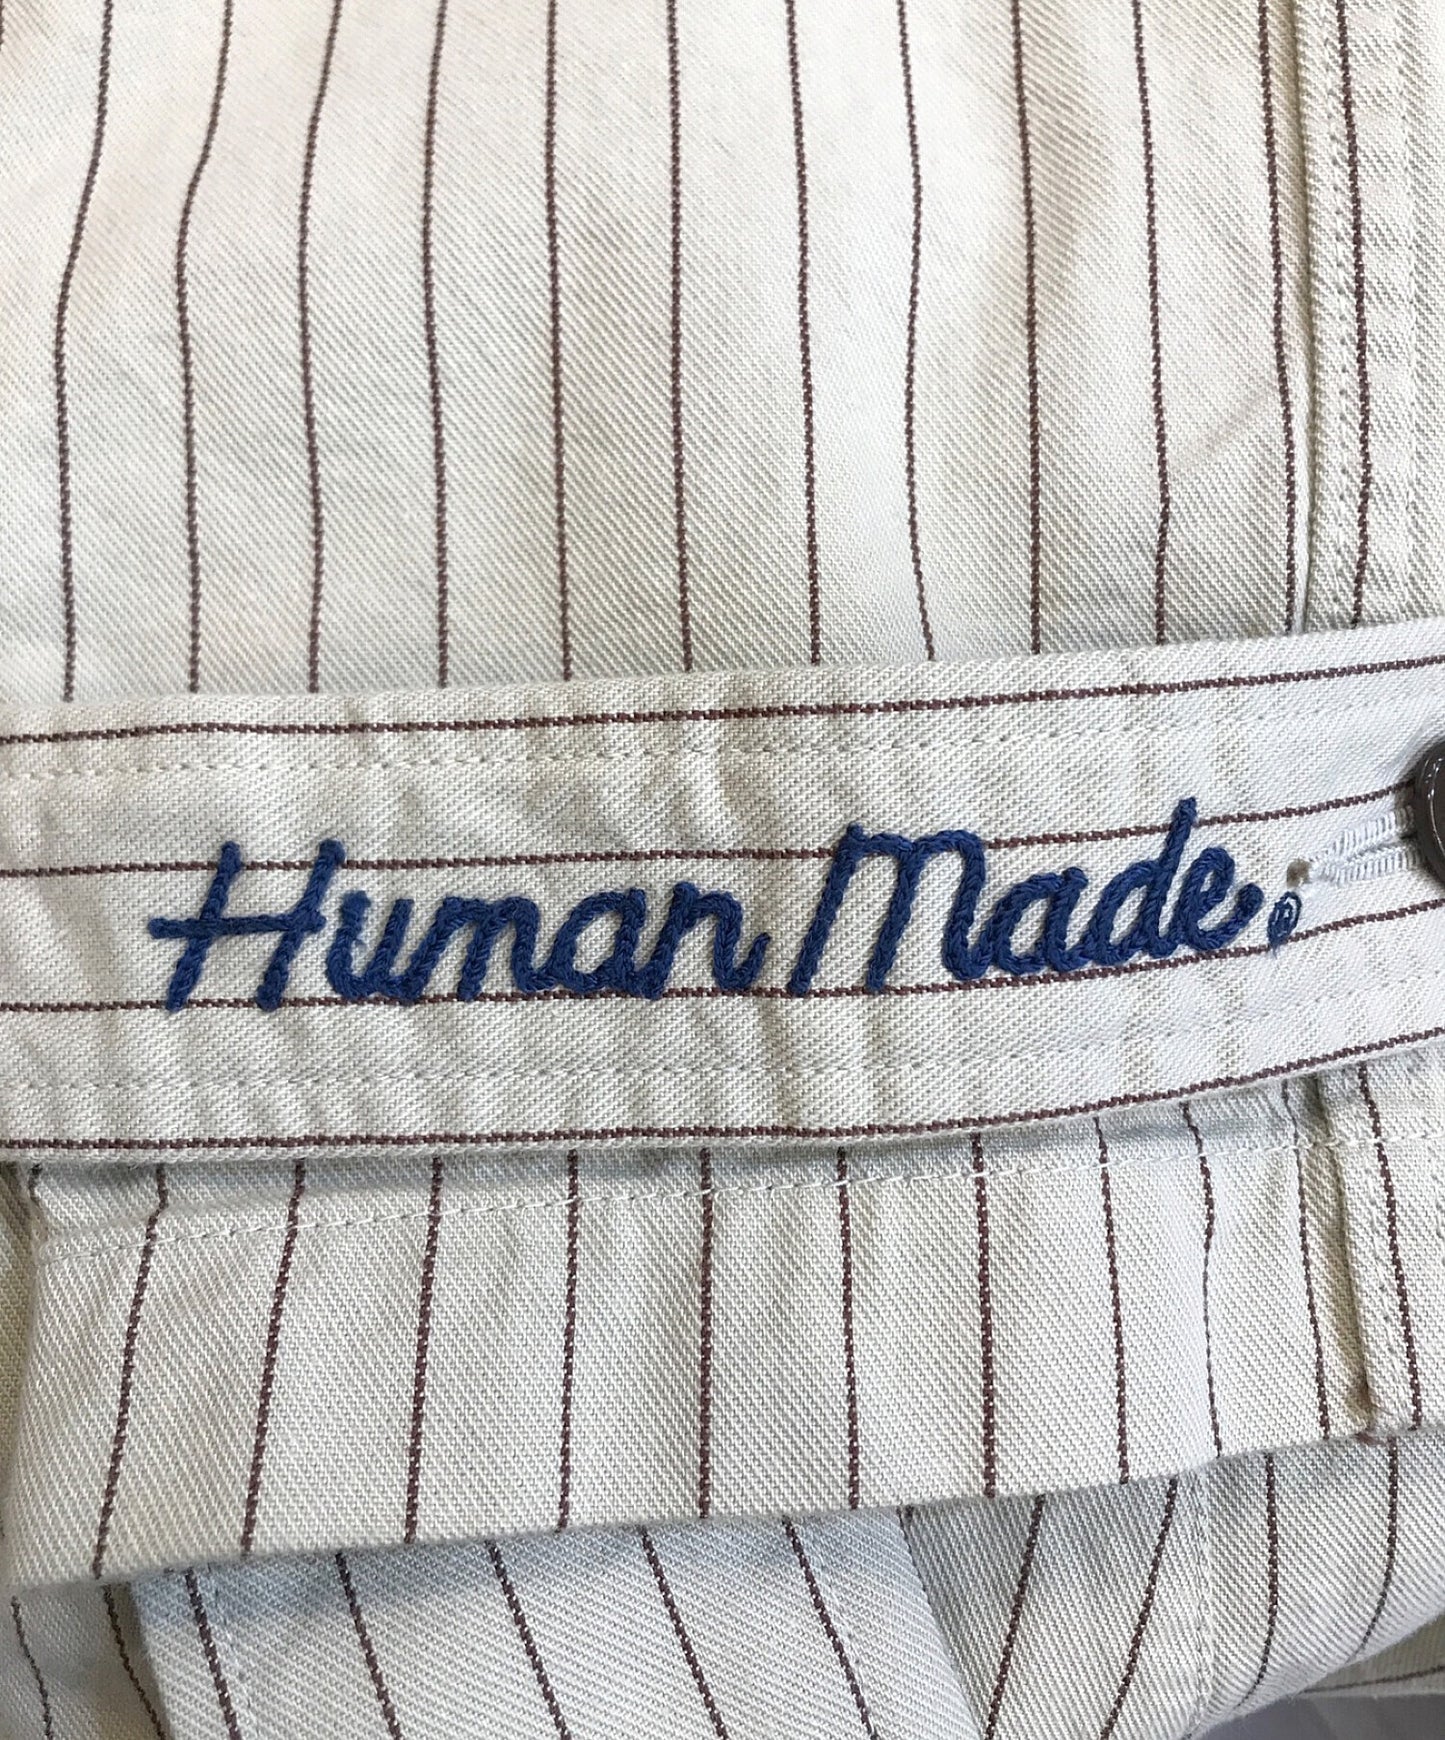 ปลอกหุ้มลายฉลุของ Human Made Store